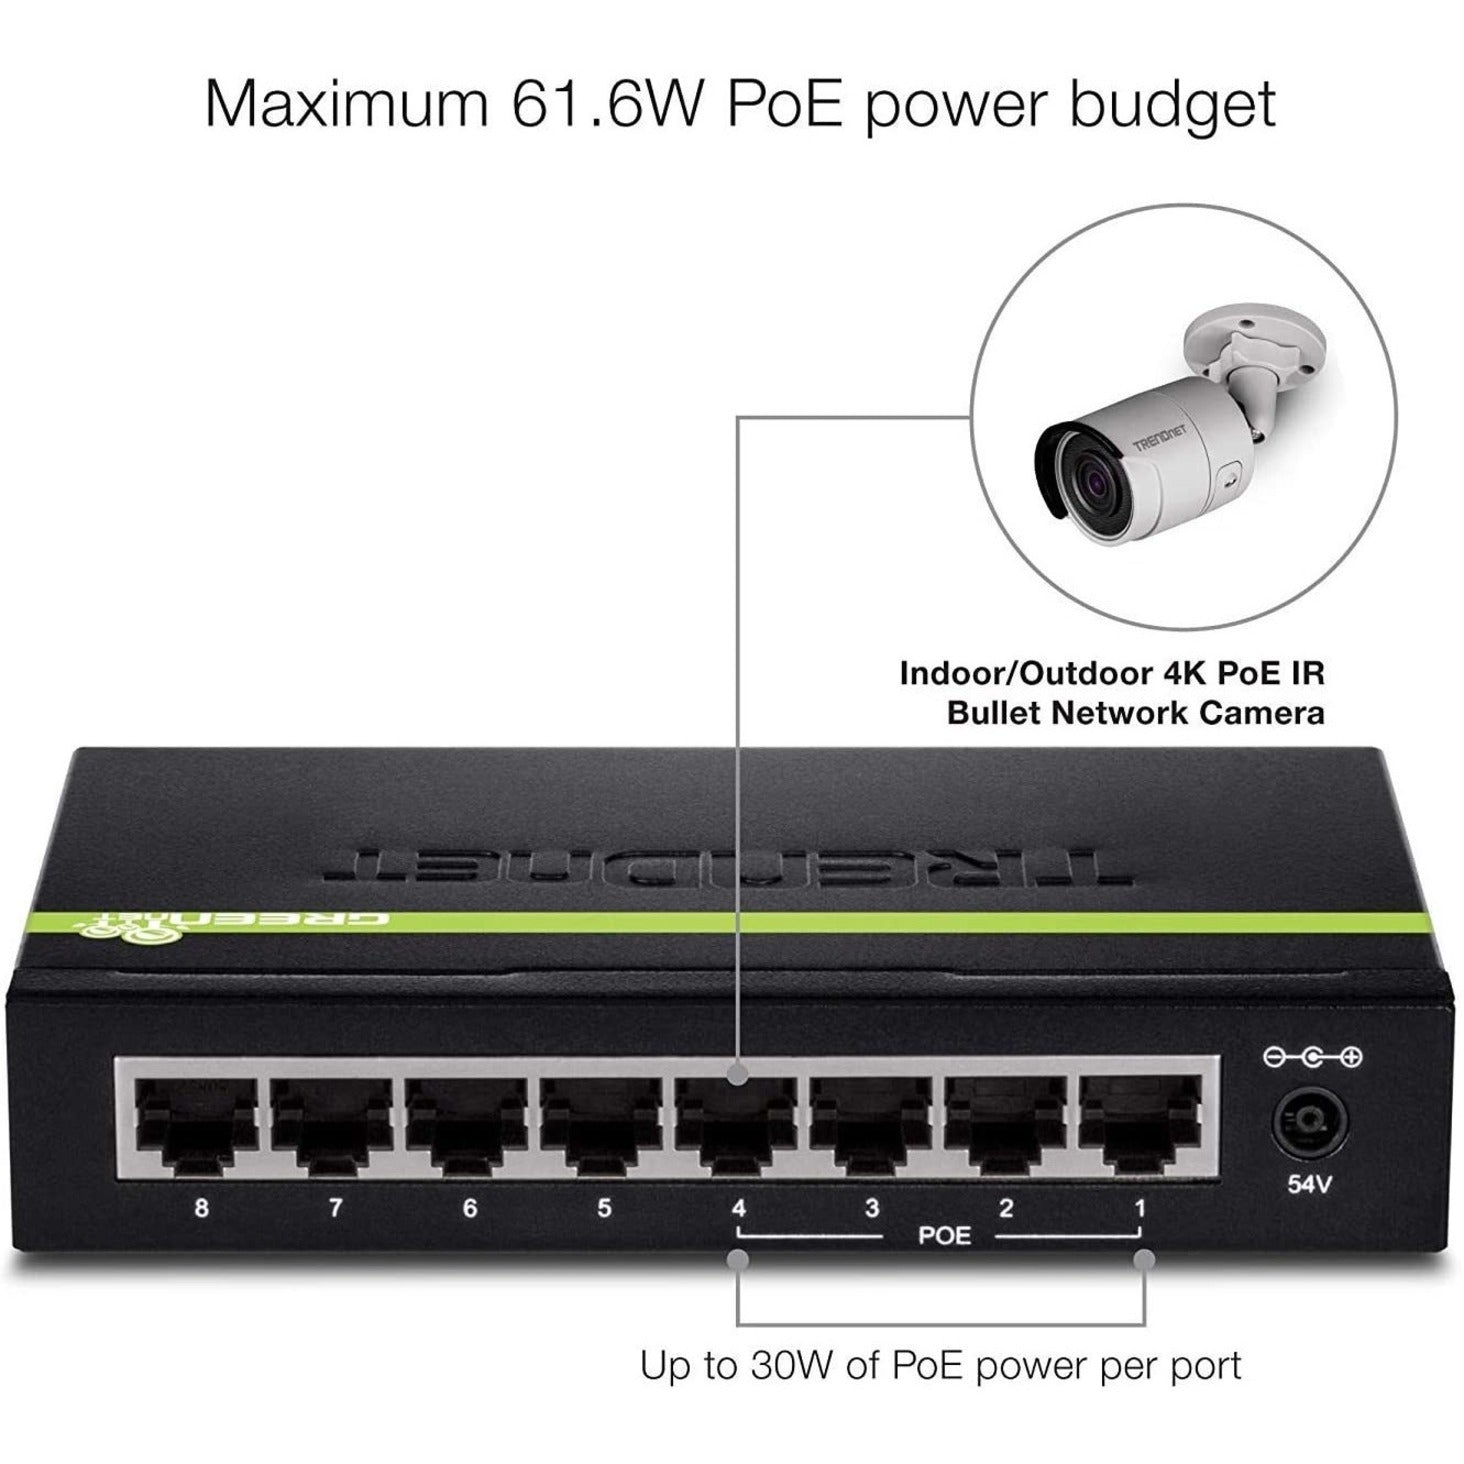 TRENDnet TPE-TG44g 8-port GREENnet Gigabit PoE+ Switch, 4 PoE+ 4 Non-PoE